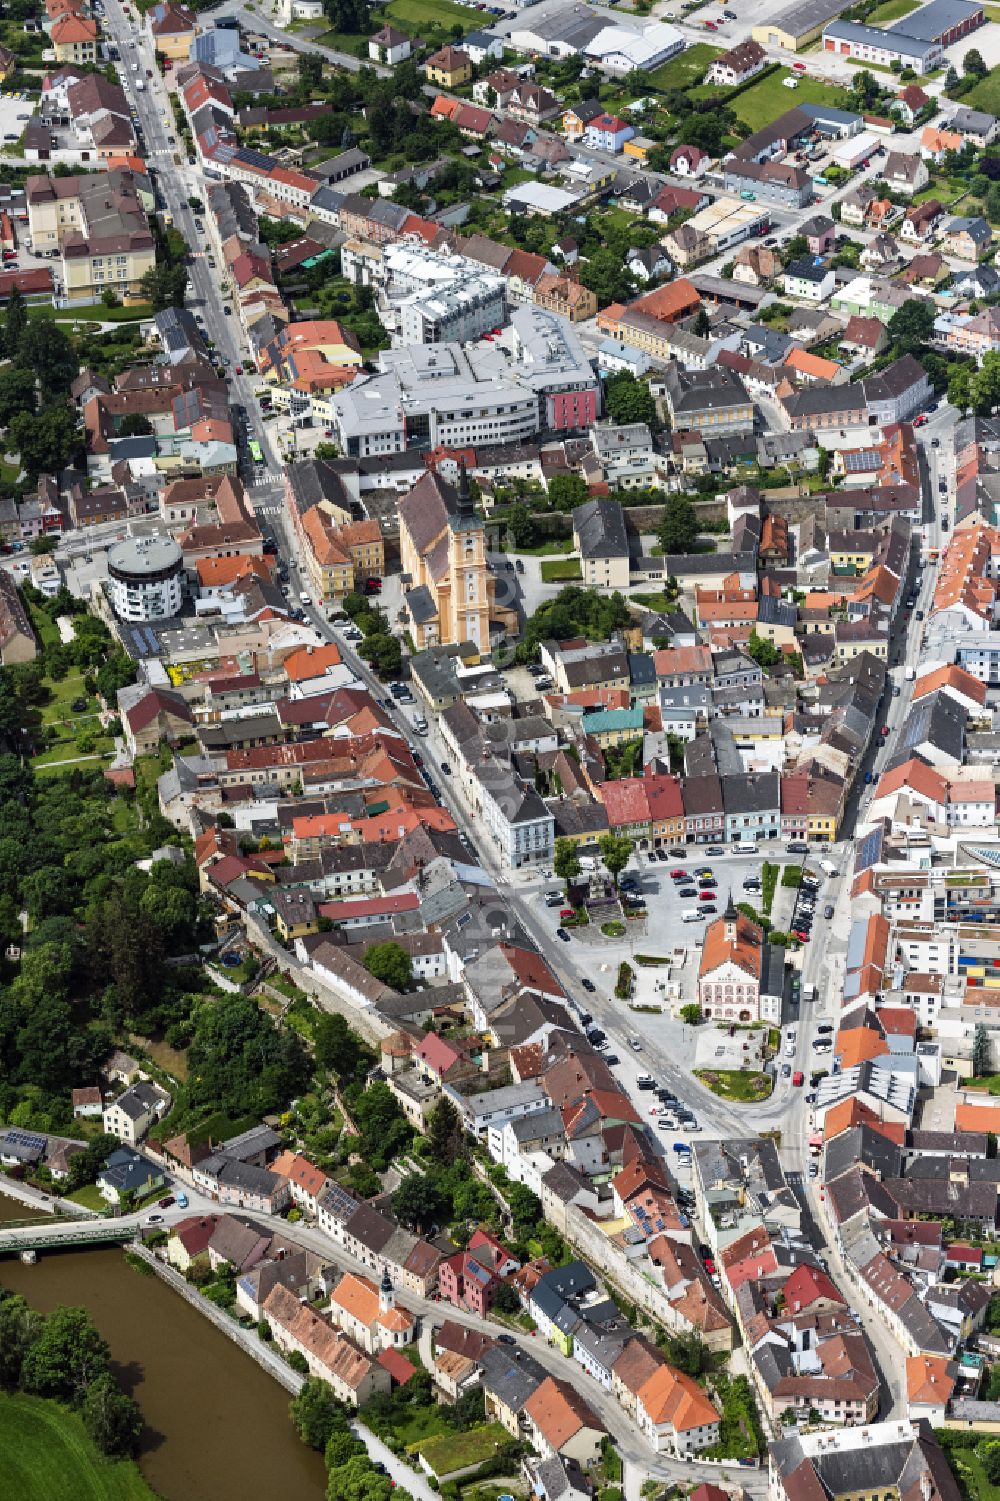 Luftaufnahme Waidhofen an der Thaya - Altstadtbereich und Innenstadtzentrum in Waidhofen an der Thaya in Niederösterreich, Österreich